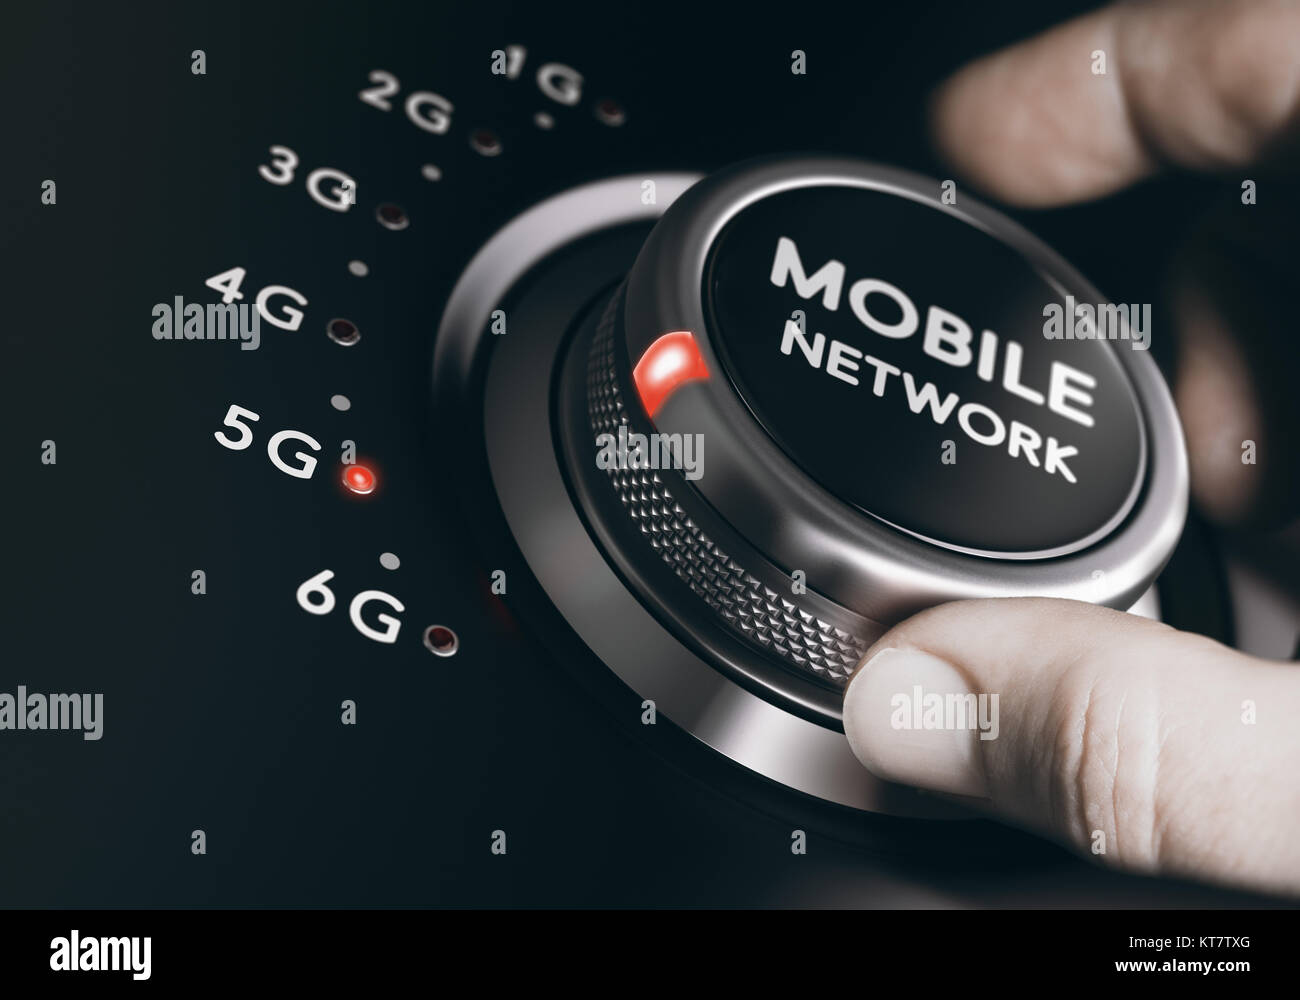 Réseau mobile de 5e génération, système sans fil 5G Banque D'Images